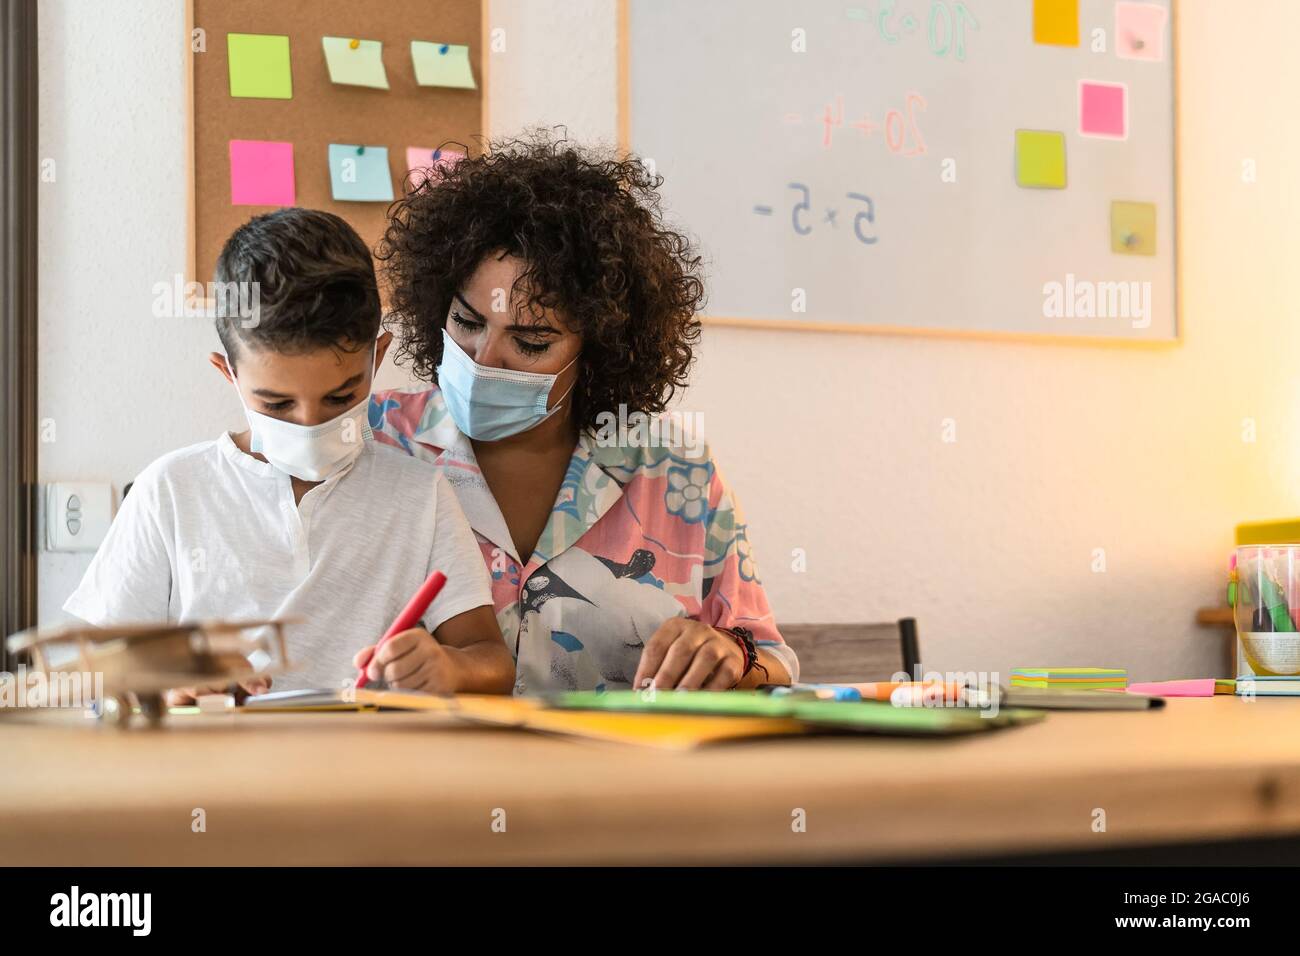 Lehrerin mit Kinderzeichnung im Vorschulunterricht, während sie Gesichtsschutzmaske während einer Corona-Virus-Pandemie trägt Stockfoto